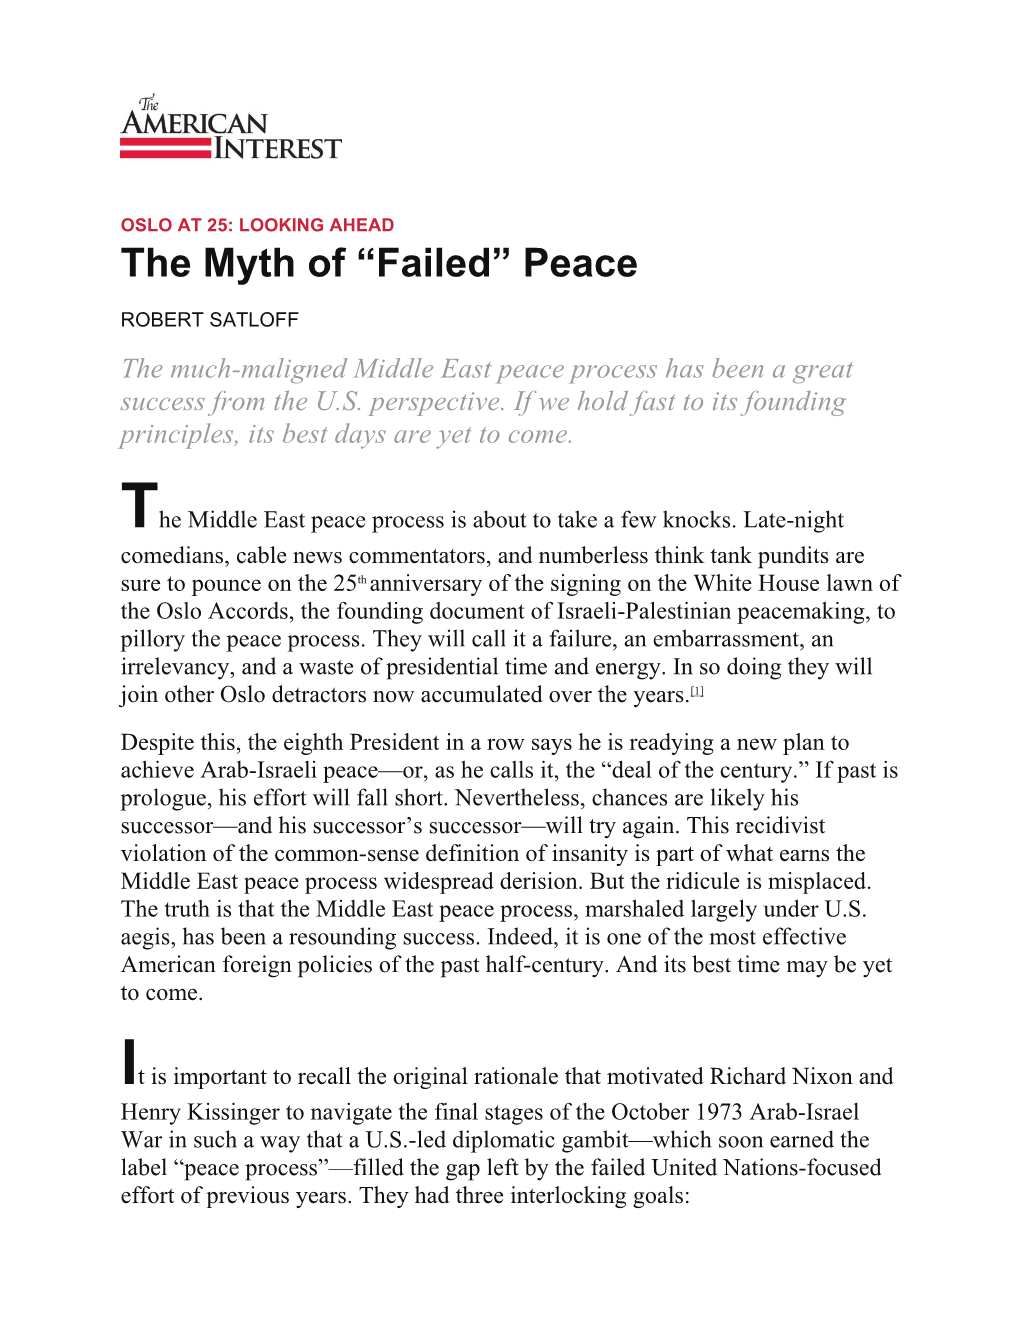 The Myth of “Failed” Peace